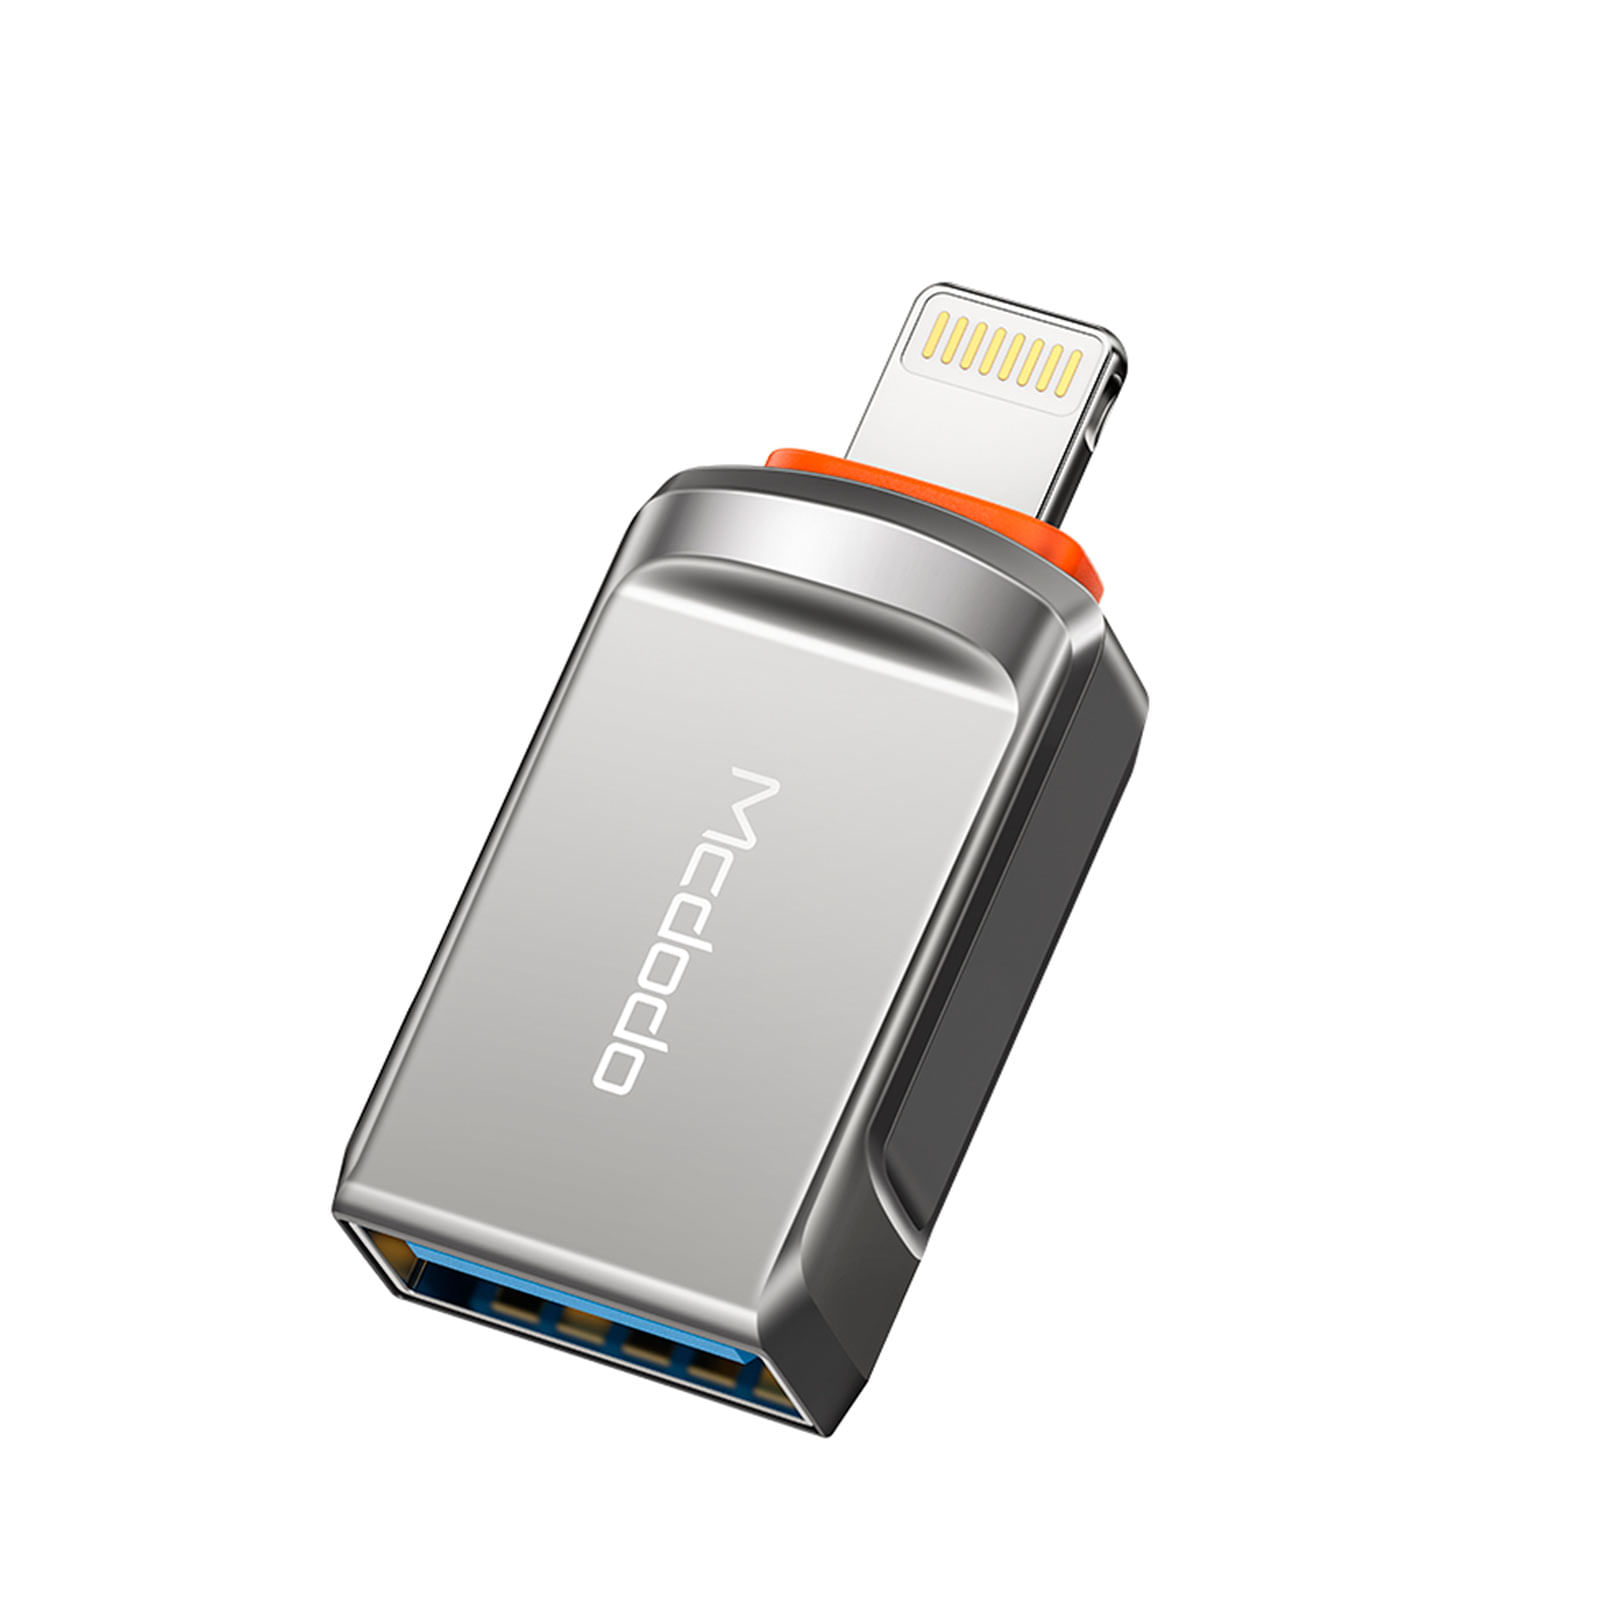 Adaptador Lightning a USB-A 3.0 Mcdodo, plateado